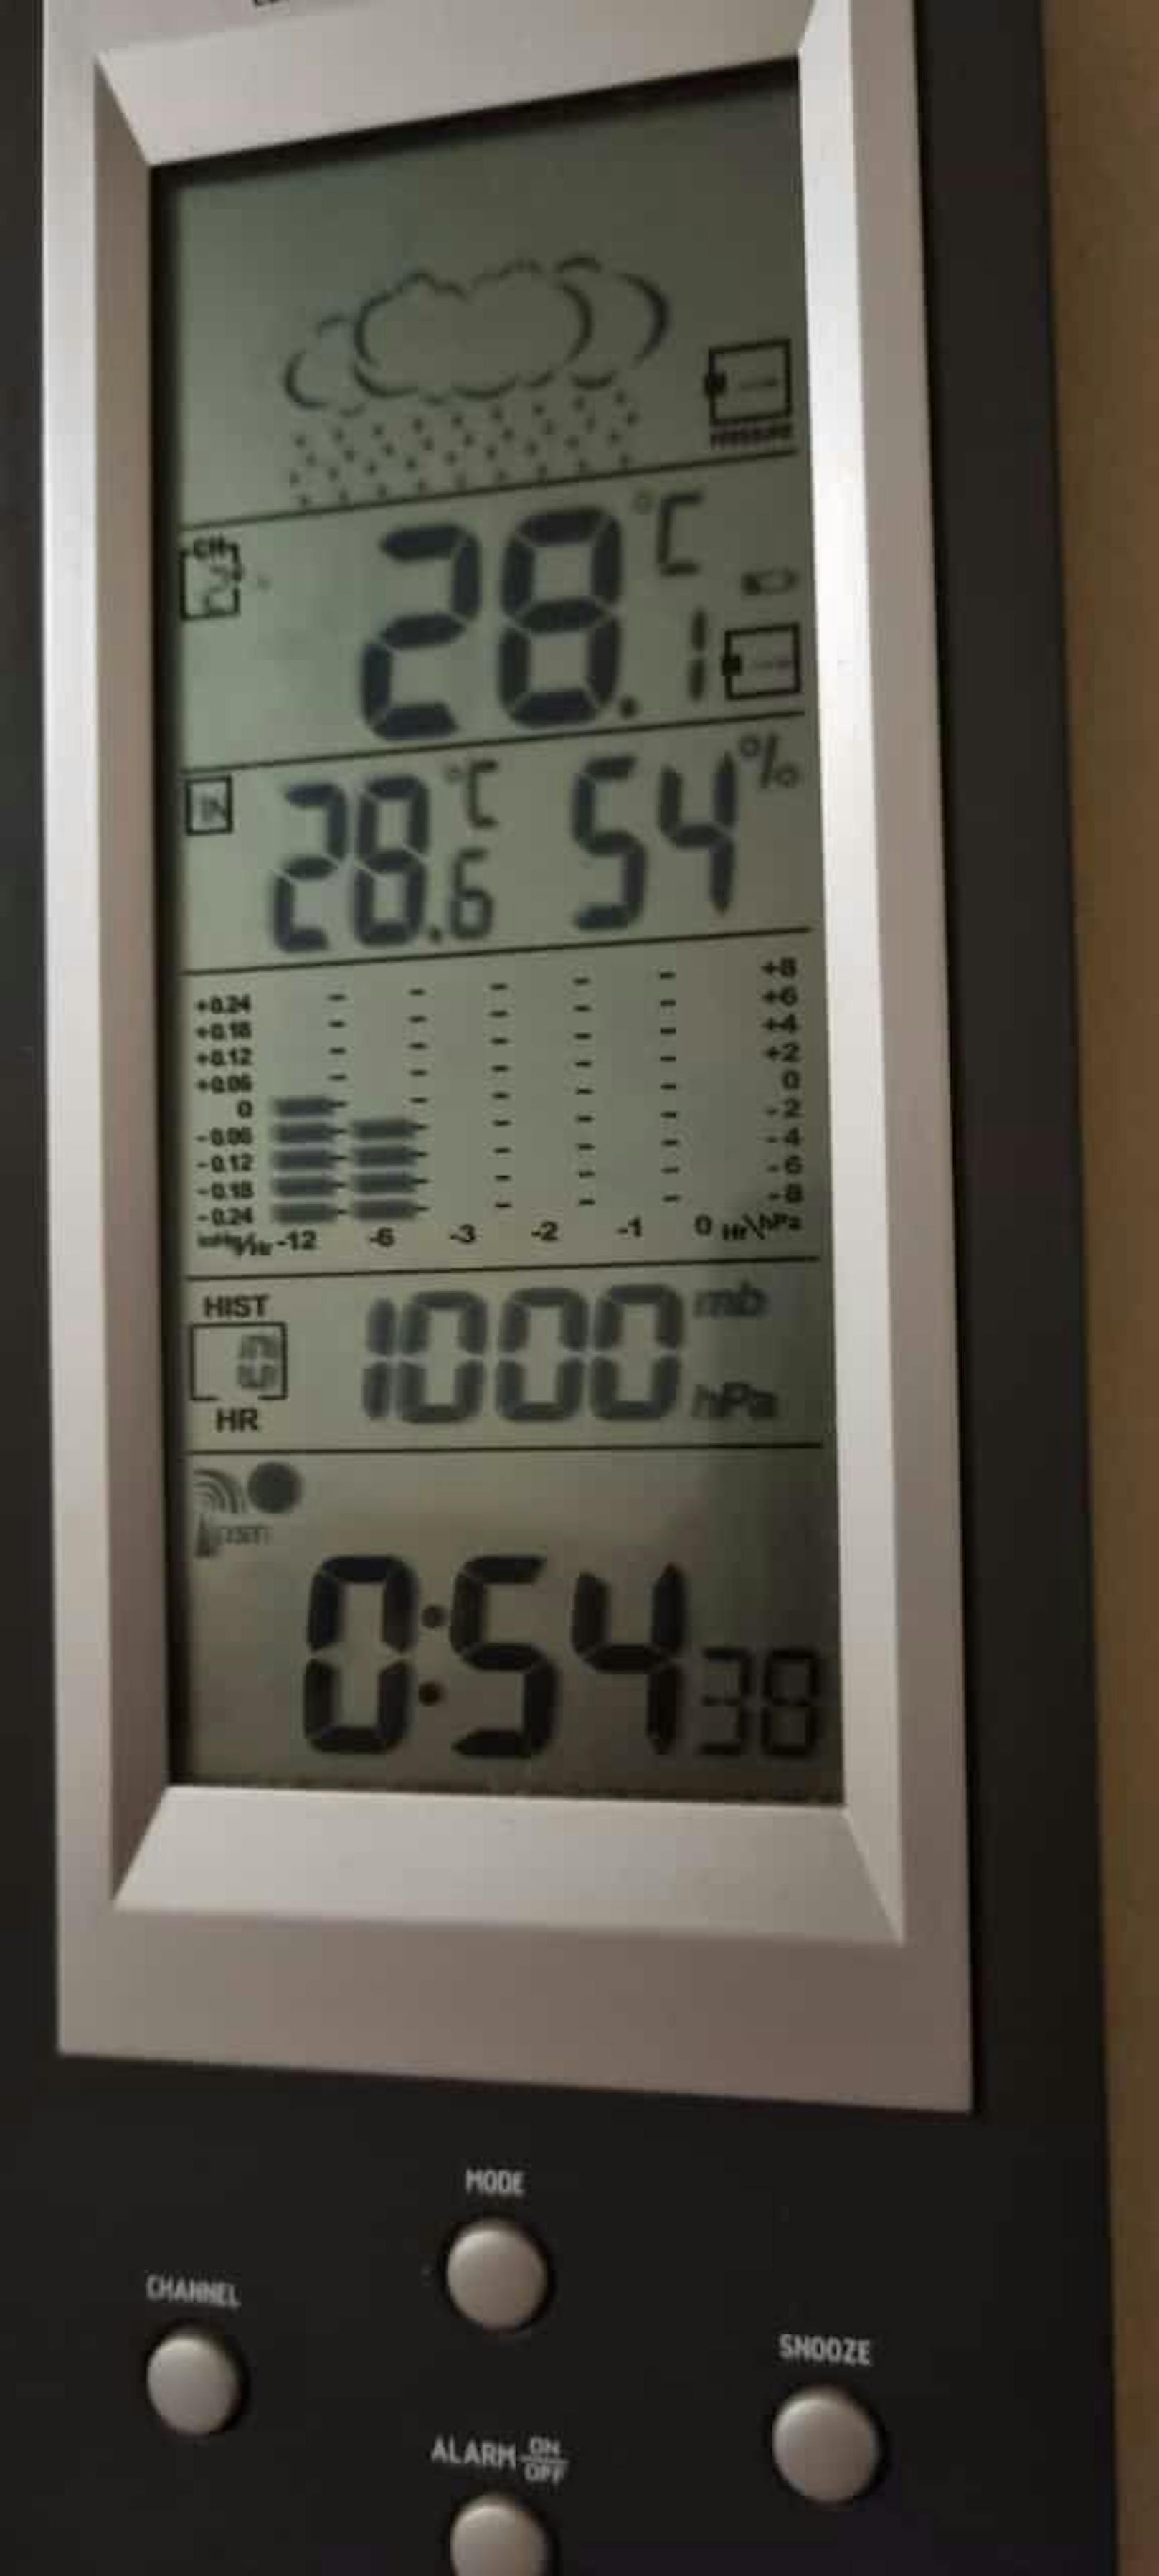 "28.6 Grad Uhr in meiner Dachgeschoss Gemeindebau-Wohnung", beschwerte sich ein Leser